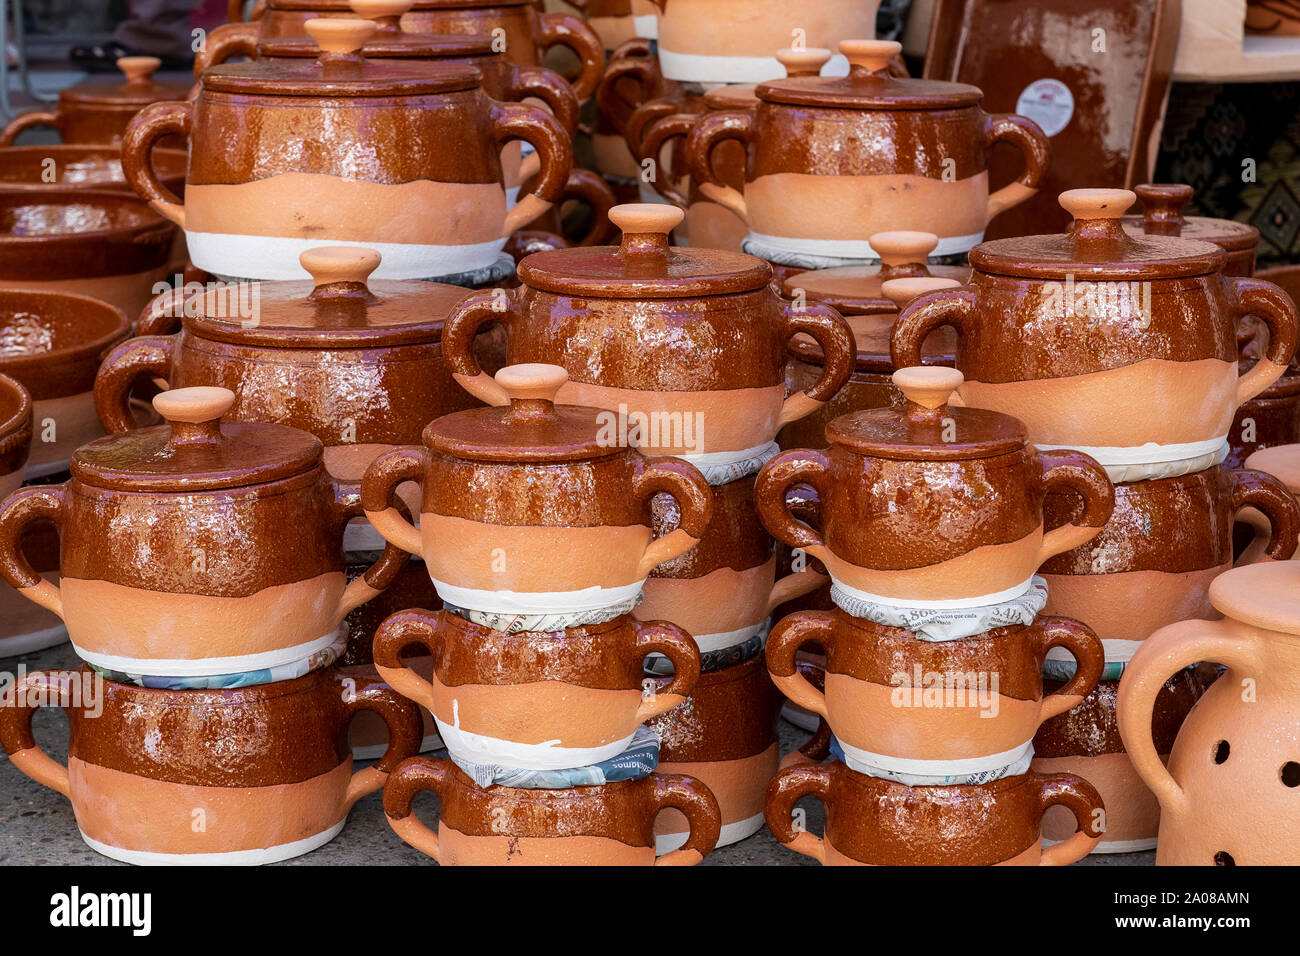 typical clay pots from the Spanish area of Pereruela, (Zamora Stock Photo -  Alamy